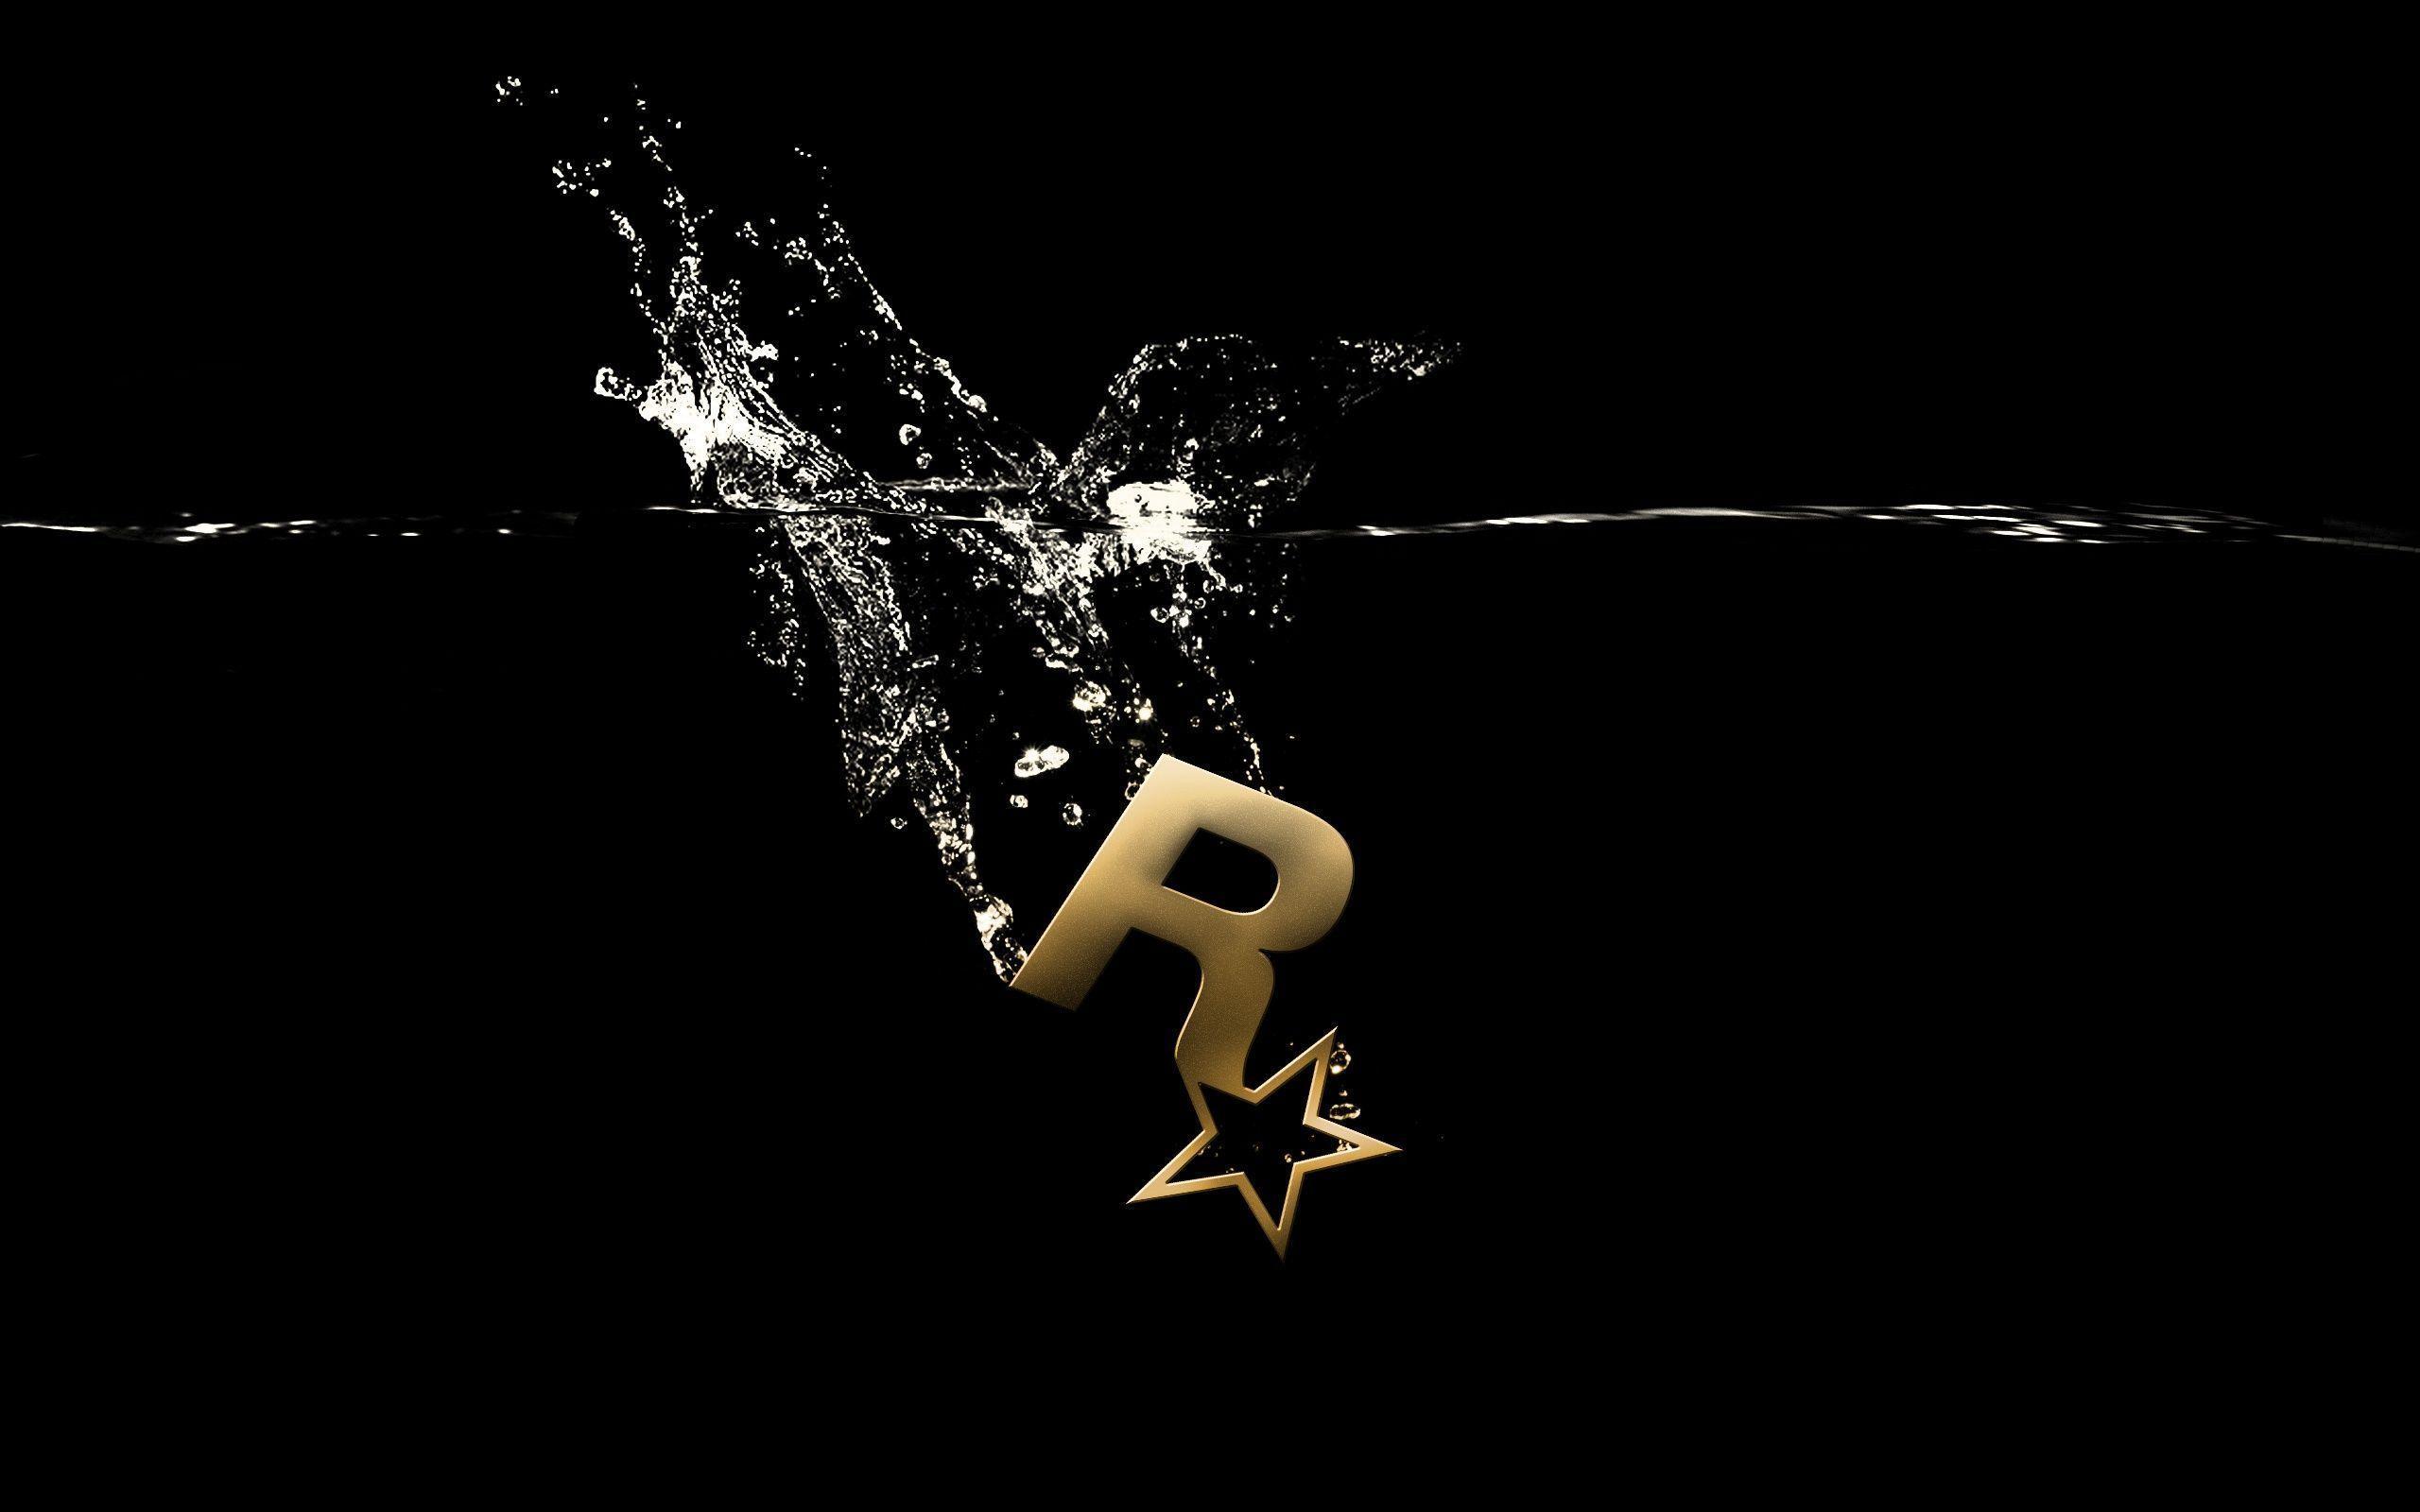 Rockstar Logo In Water Wallpaper. Paravu.com